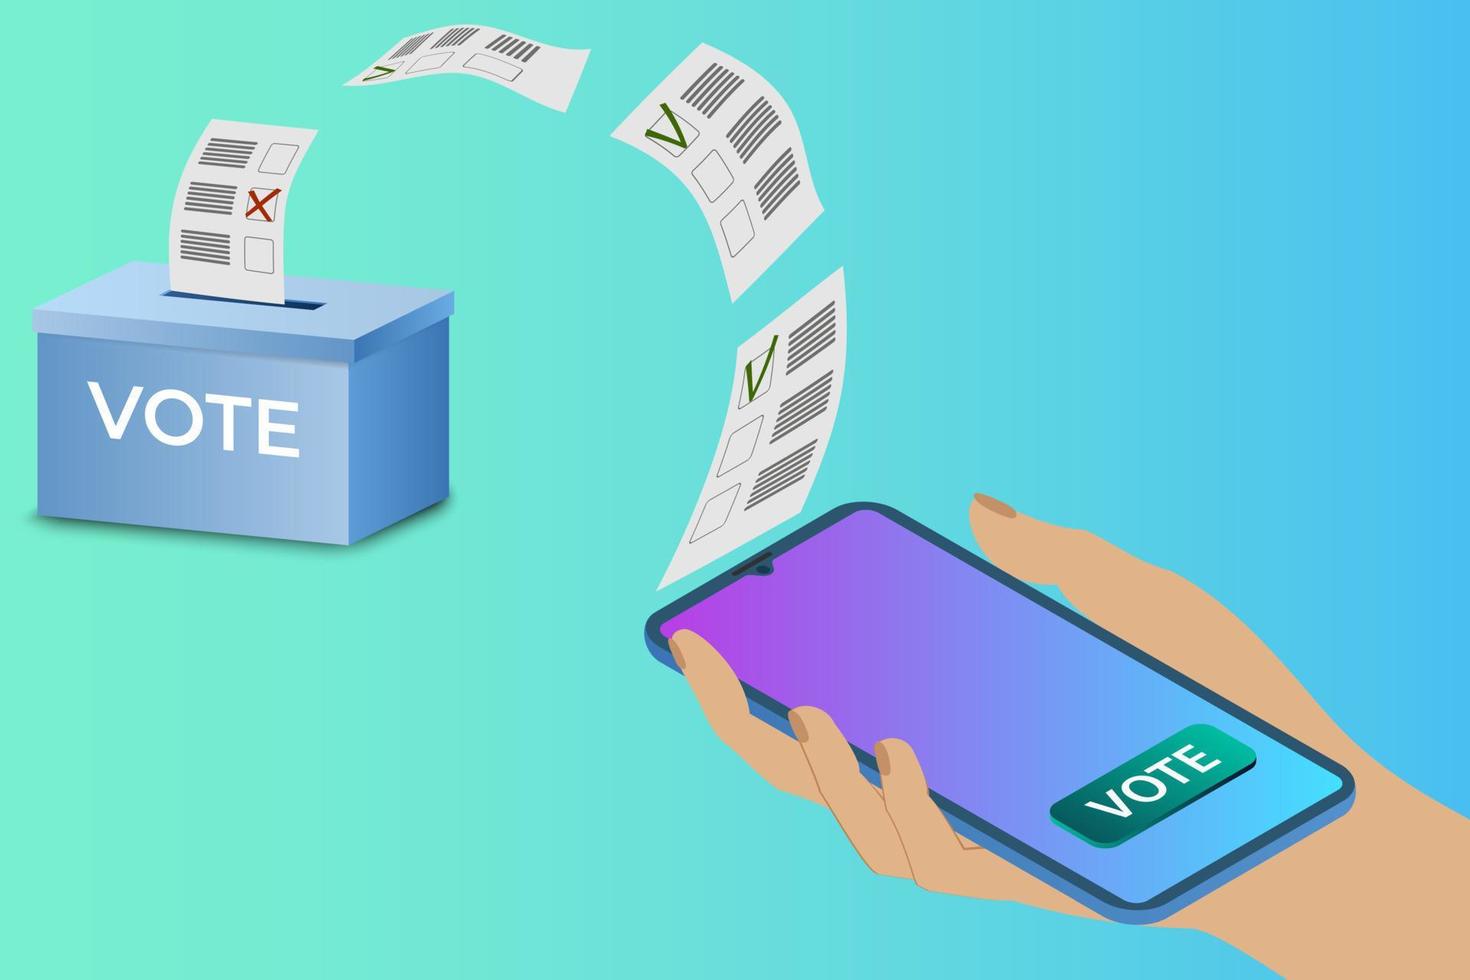 vote en ligne.une personne vote à l'aide d'une application sur son smartphone.concept de vote électronique illustration vectorielle isométrique. vecteur